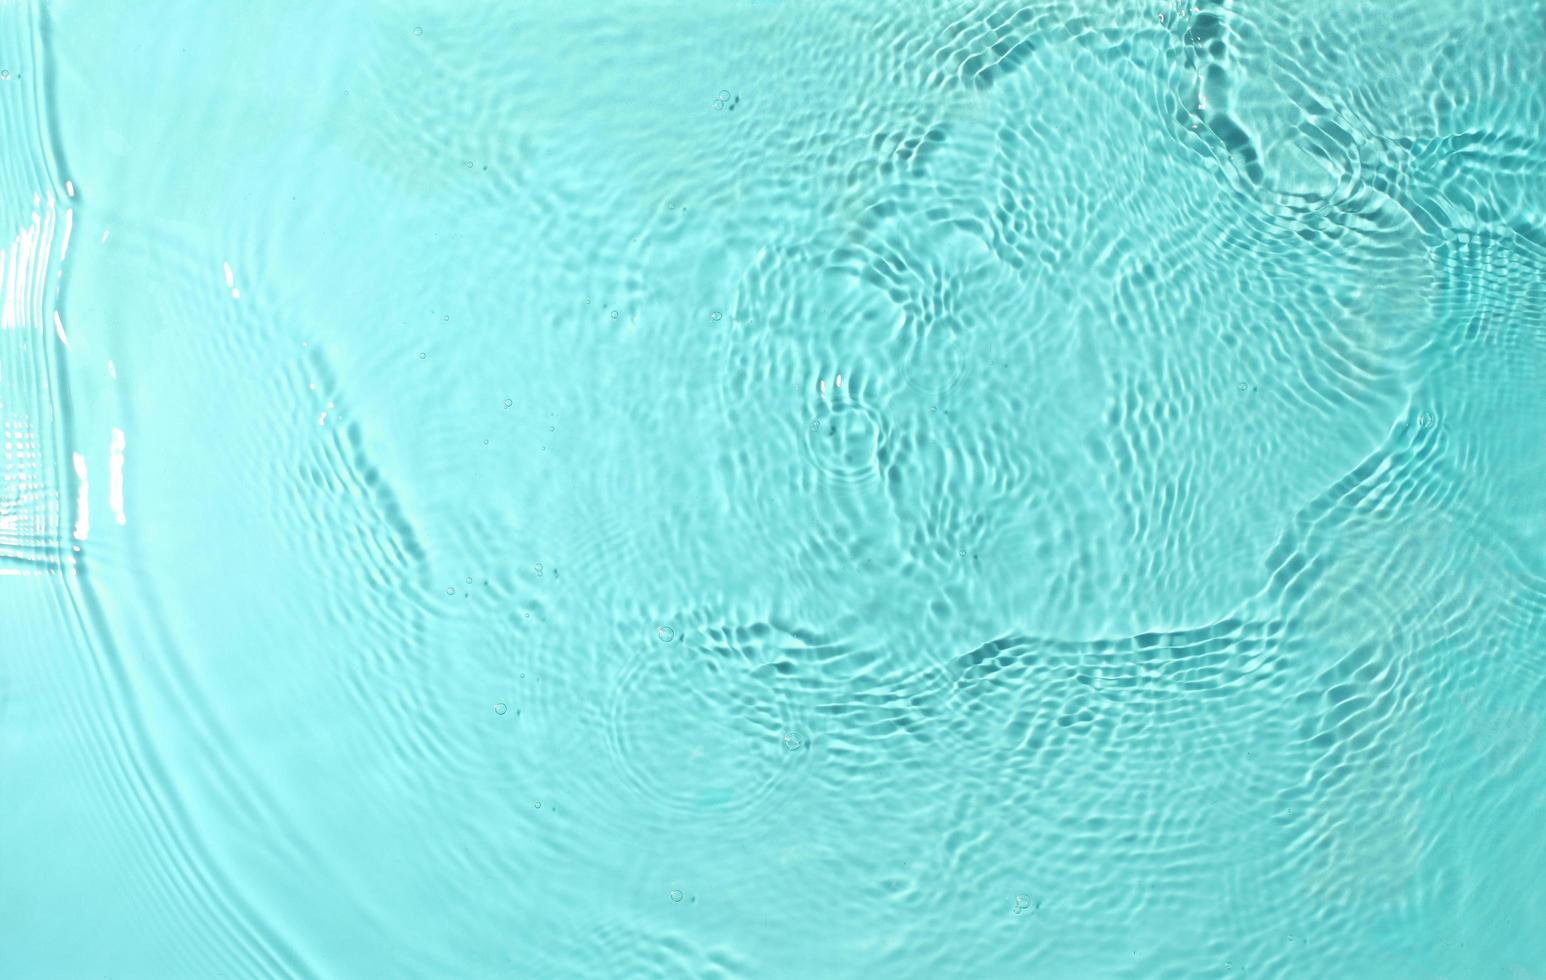 Textur von Spritzwasser auf pastellfarbenem Hintergrund foto